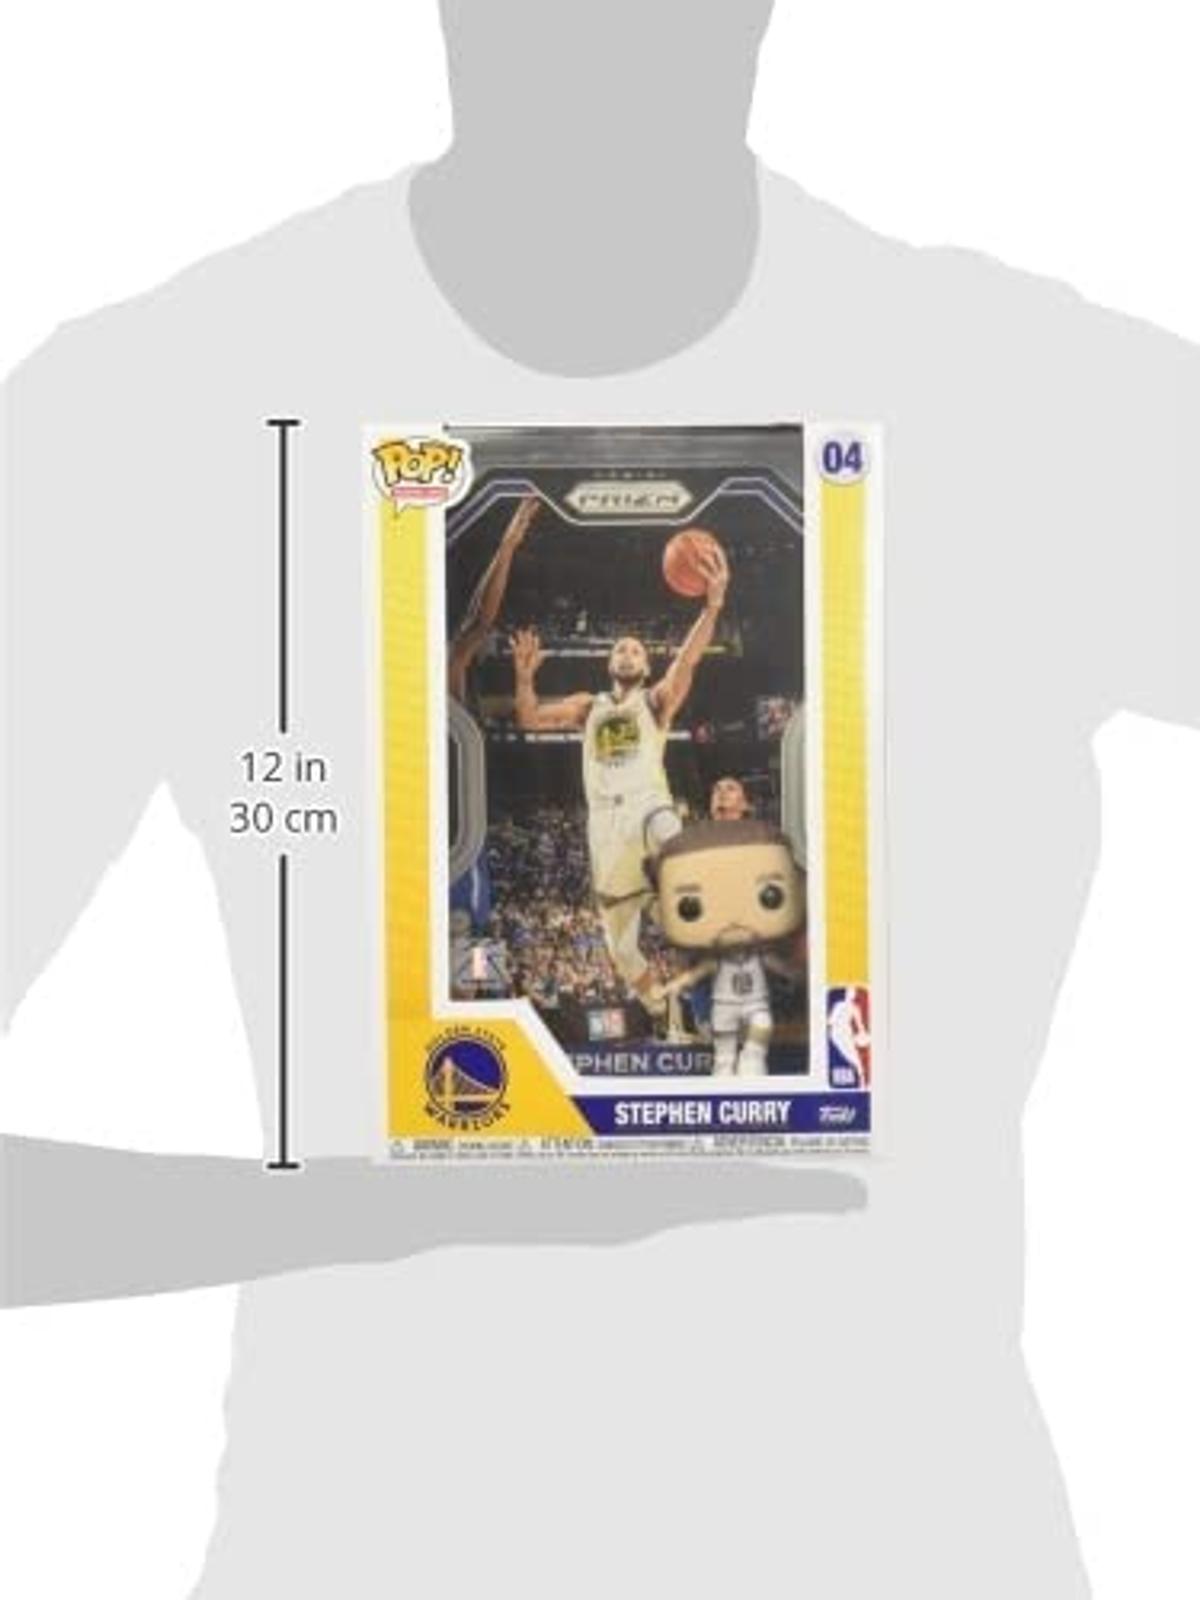 POP NBA Cover-Steven Curry/Golden - State Warriors